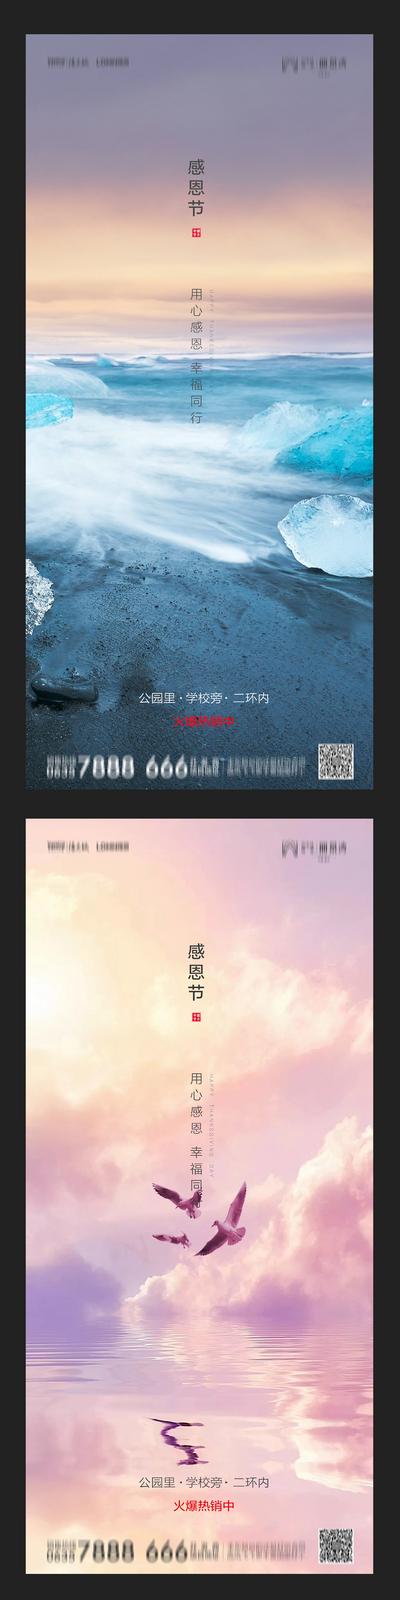 南门网 海报  地产  感恩节   公历节日  系列    海鸥  海  山